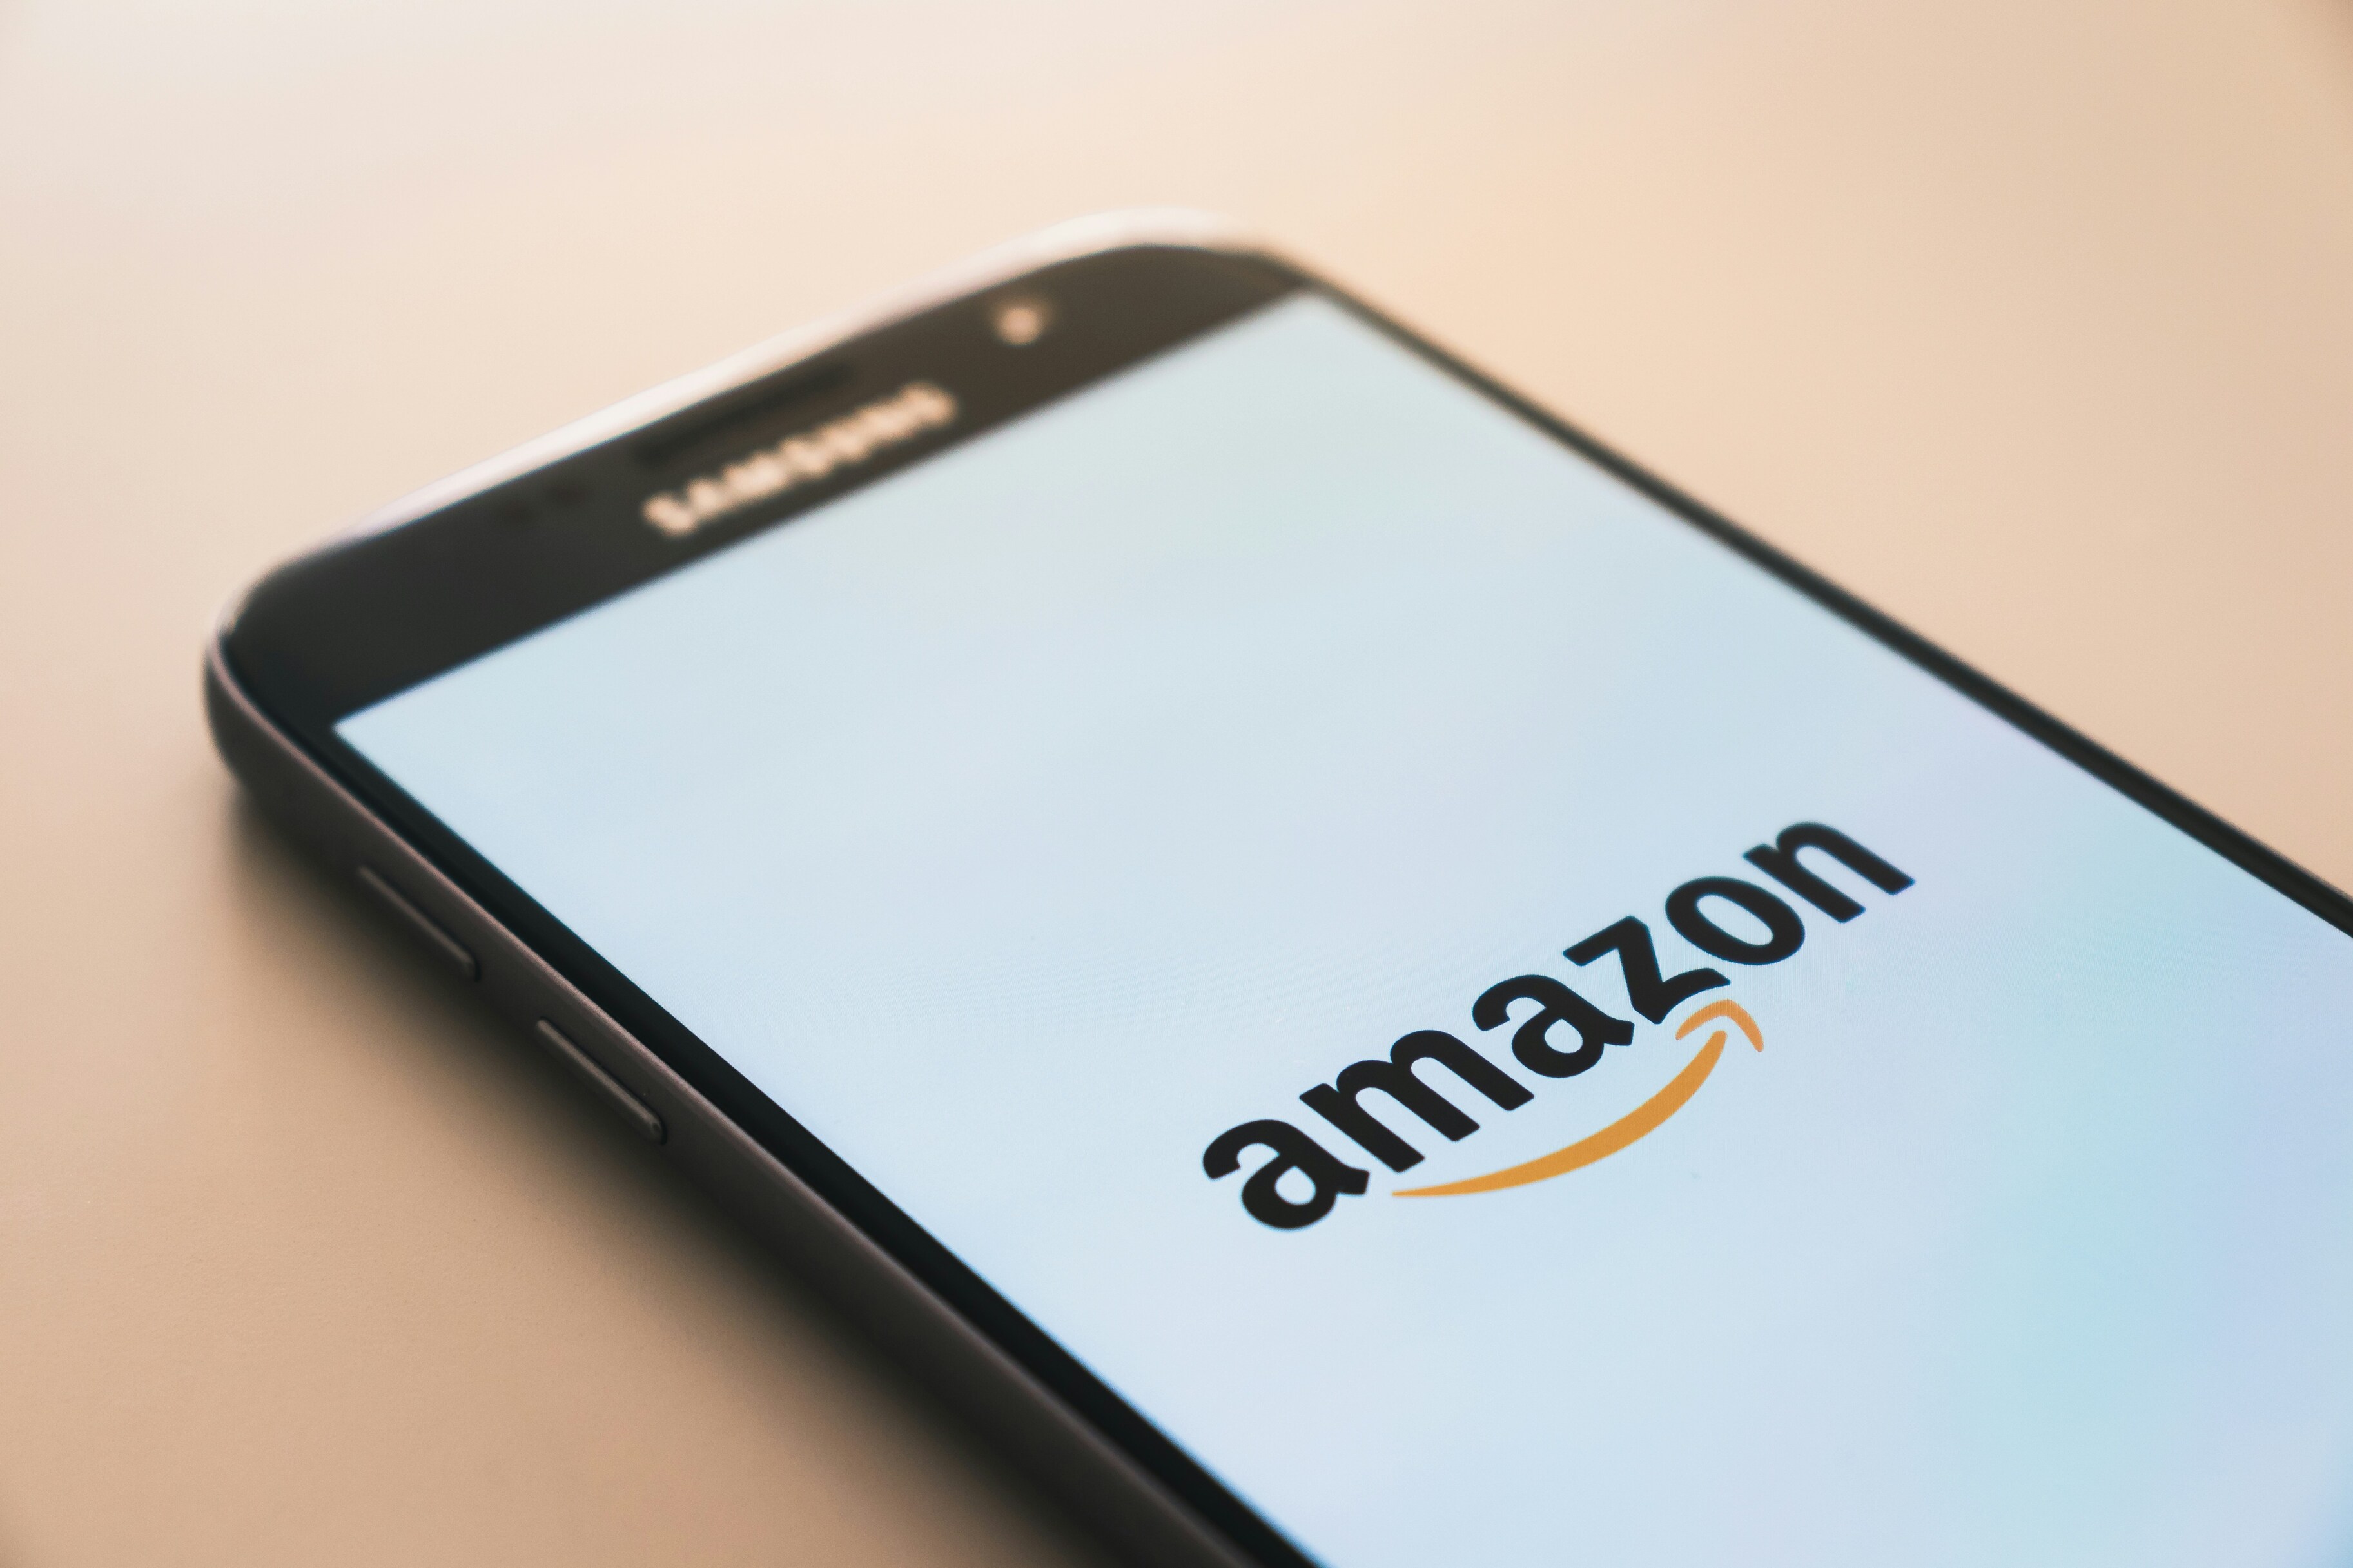 Amazon’s Ring перестанет давать доступ полиции к видеозаписям пользователей